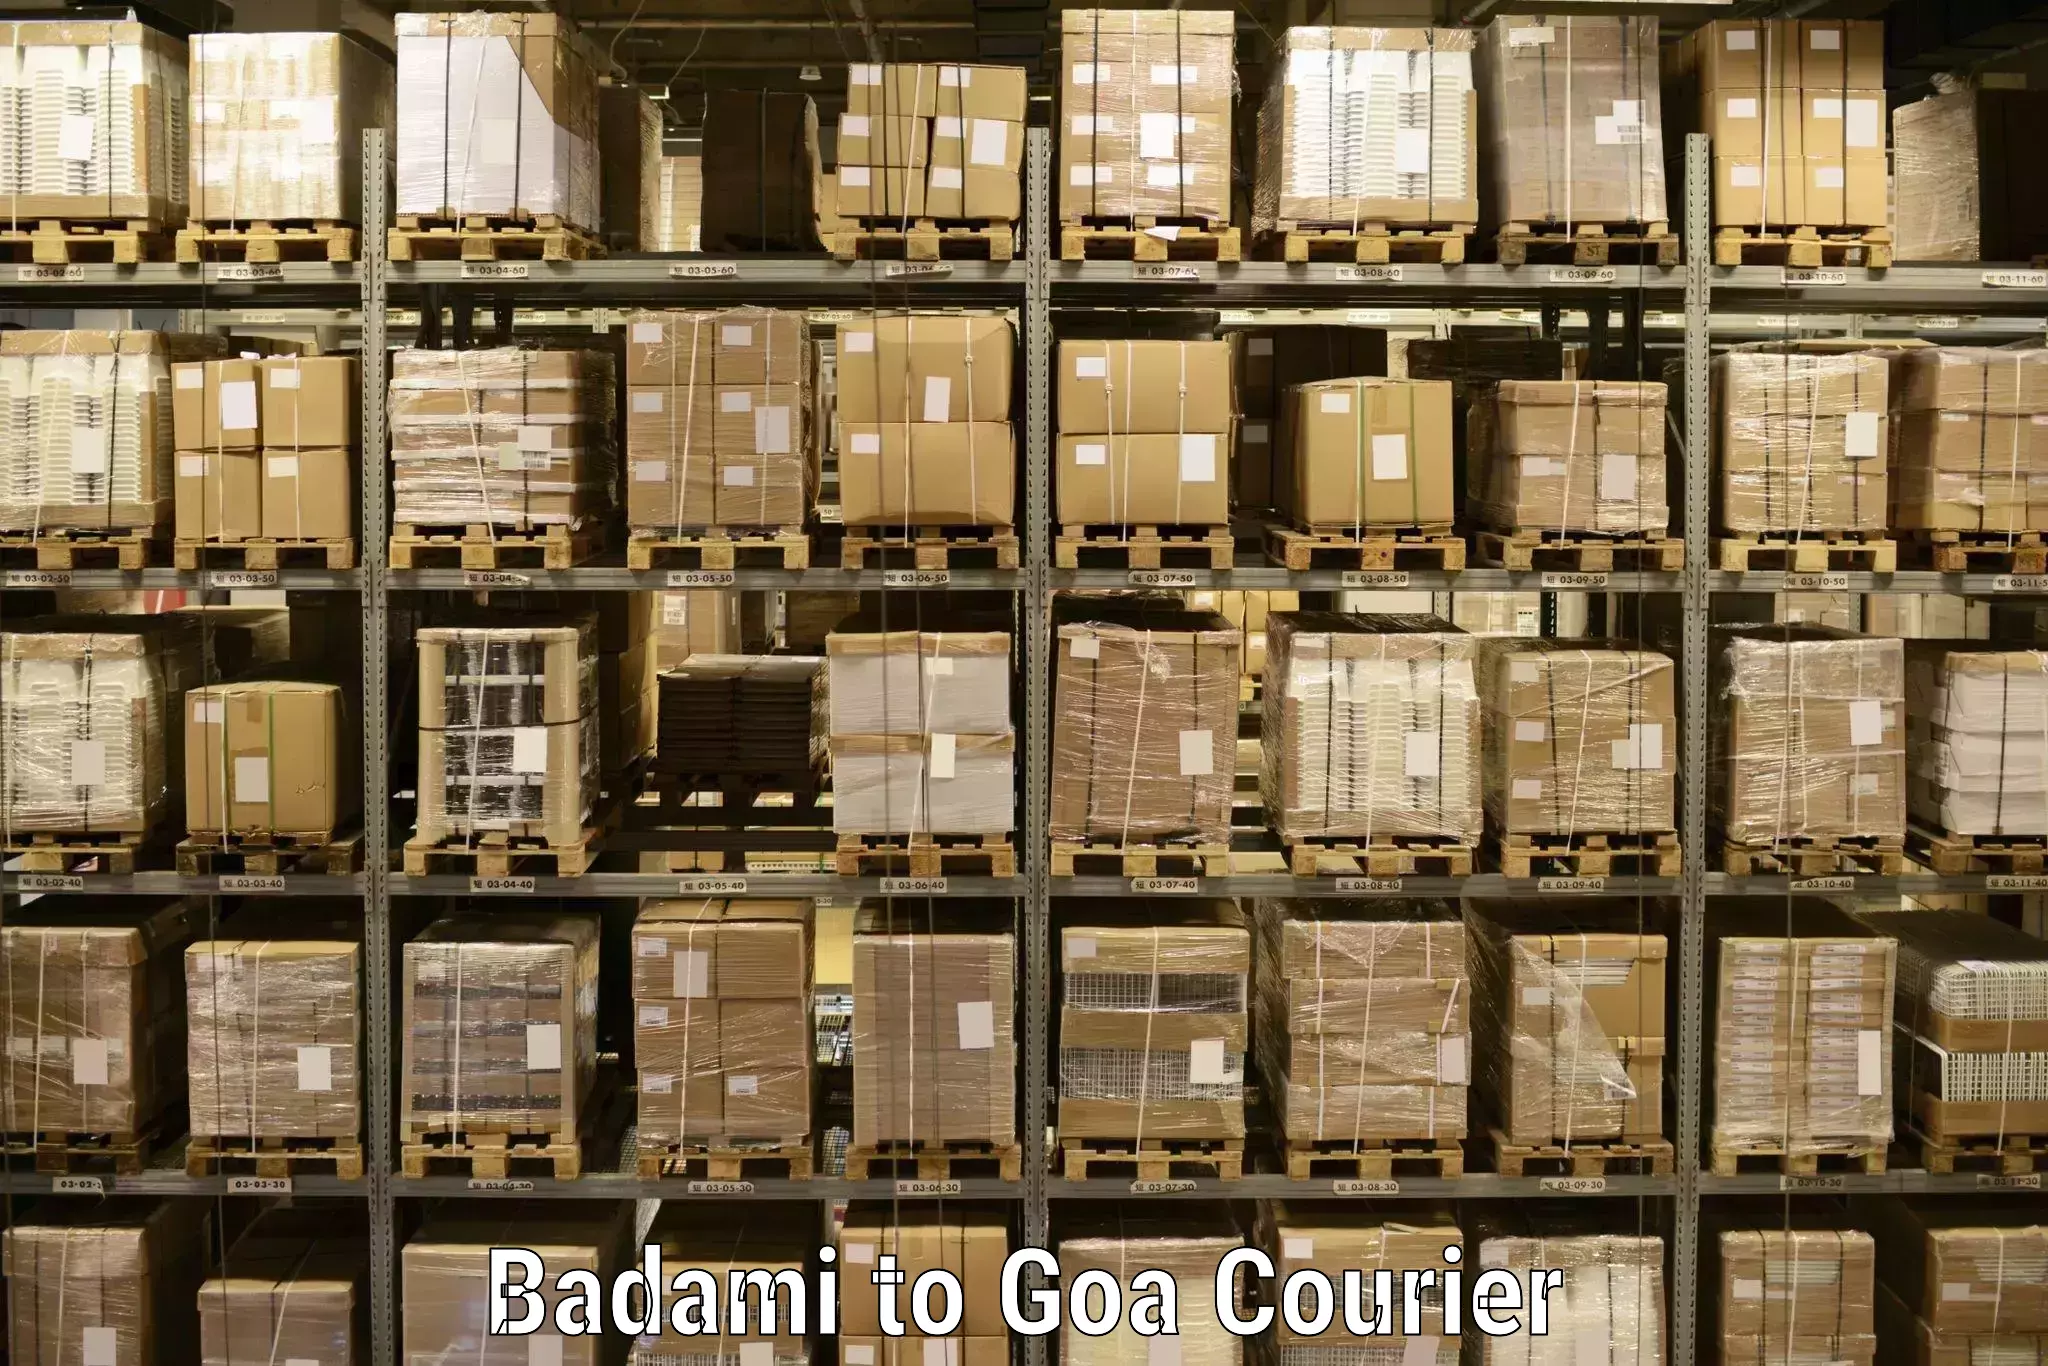 Seamless shipping experience Badami to Goa